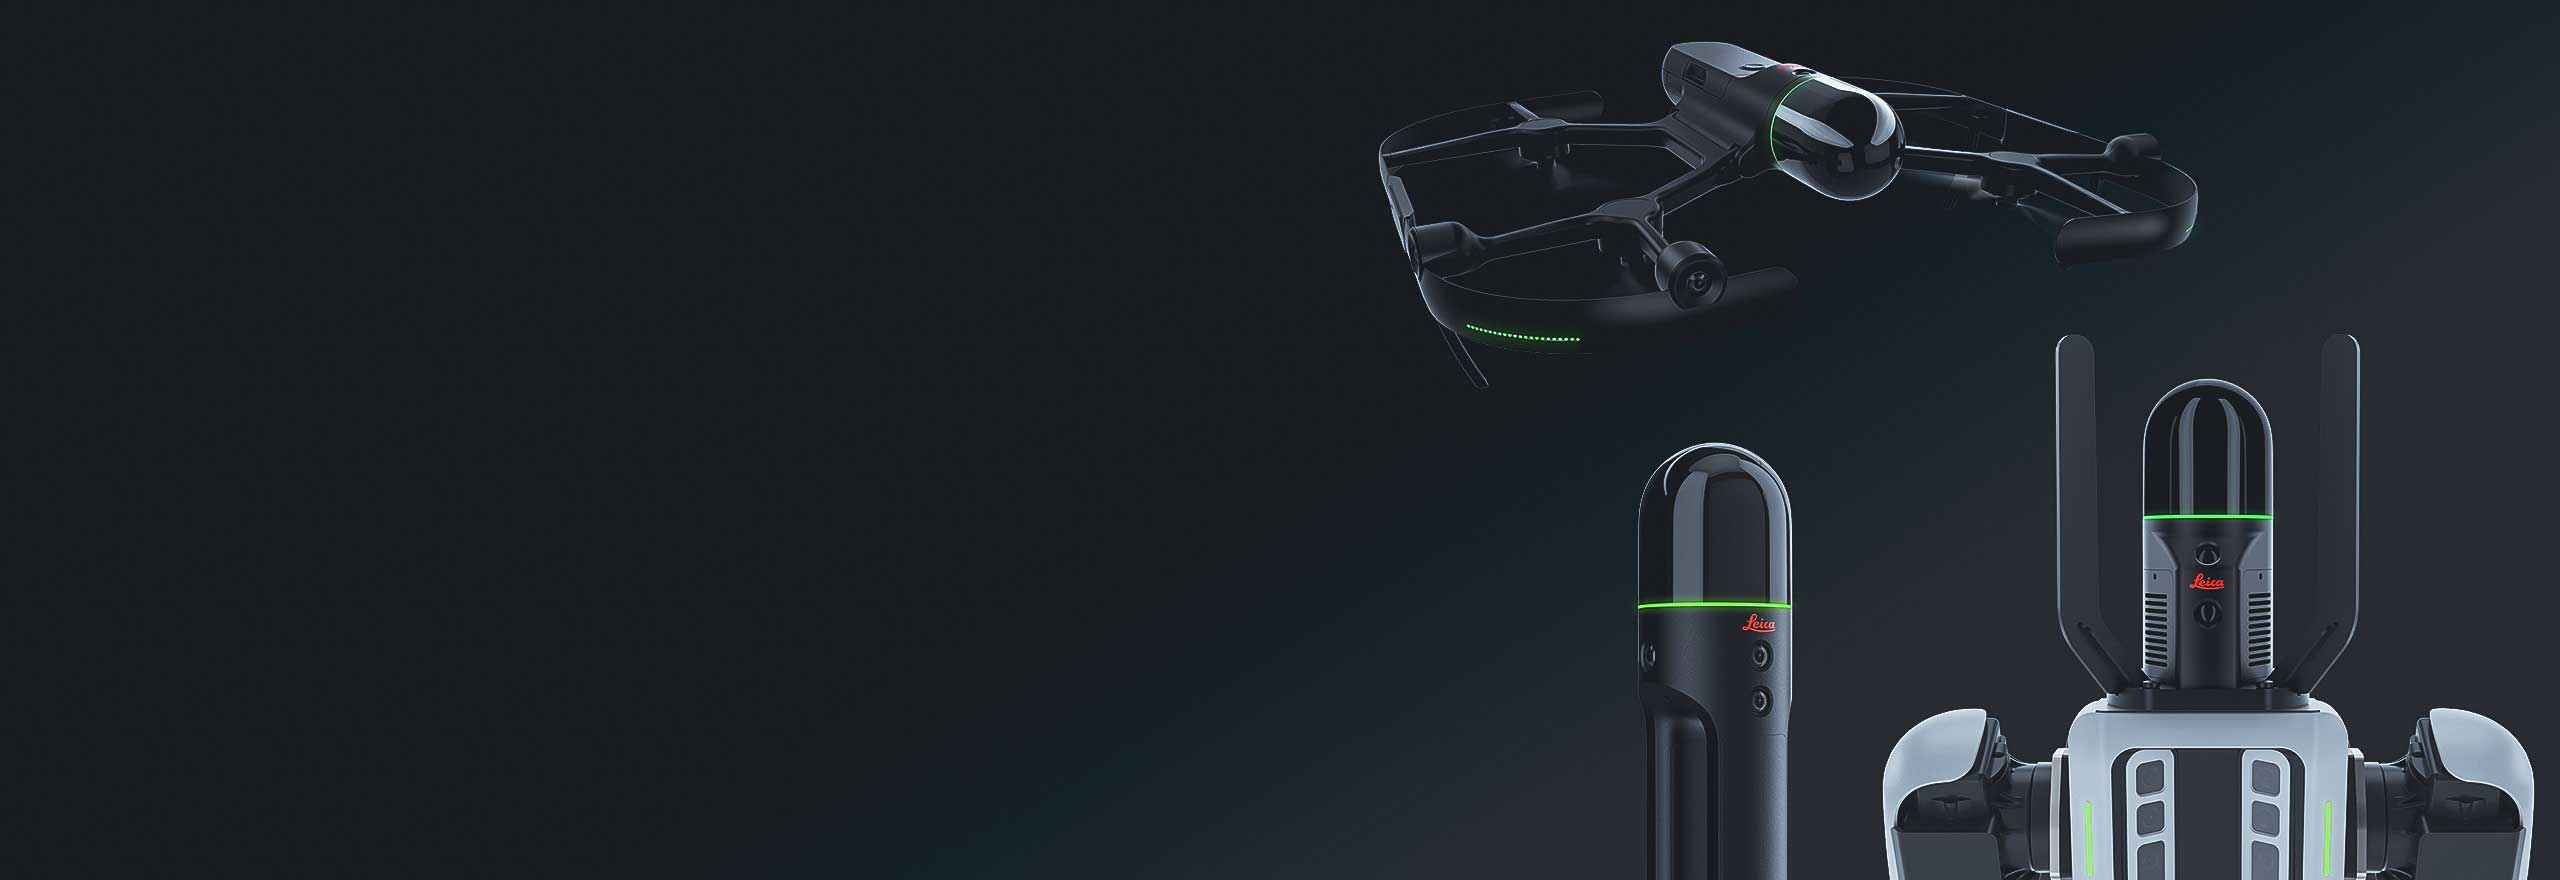 Soluzioni Leica BLK per l'acquisizione autonoma della realtà, dagli scanner laser volanti ai vettori robotici